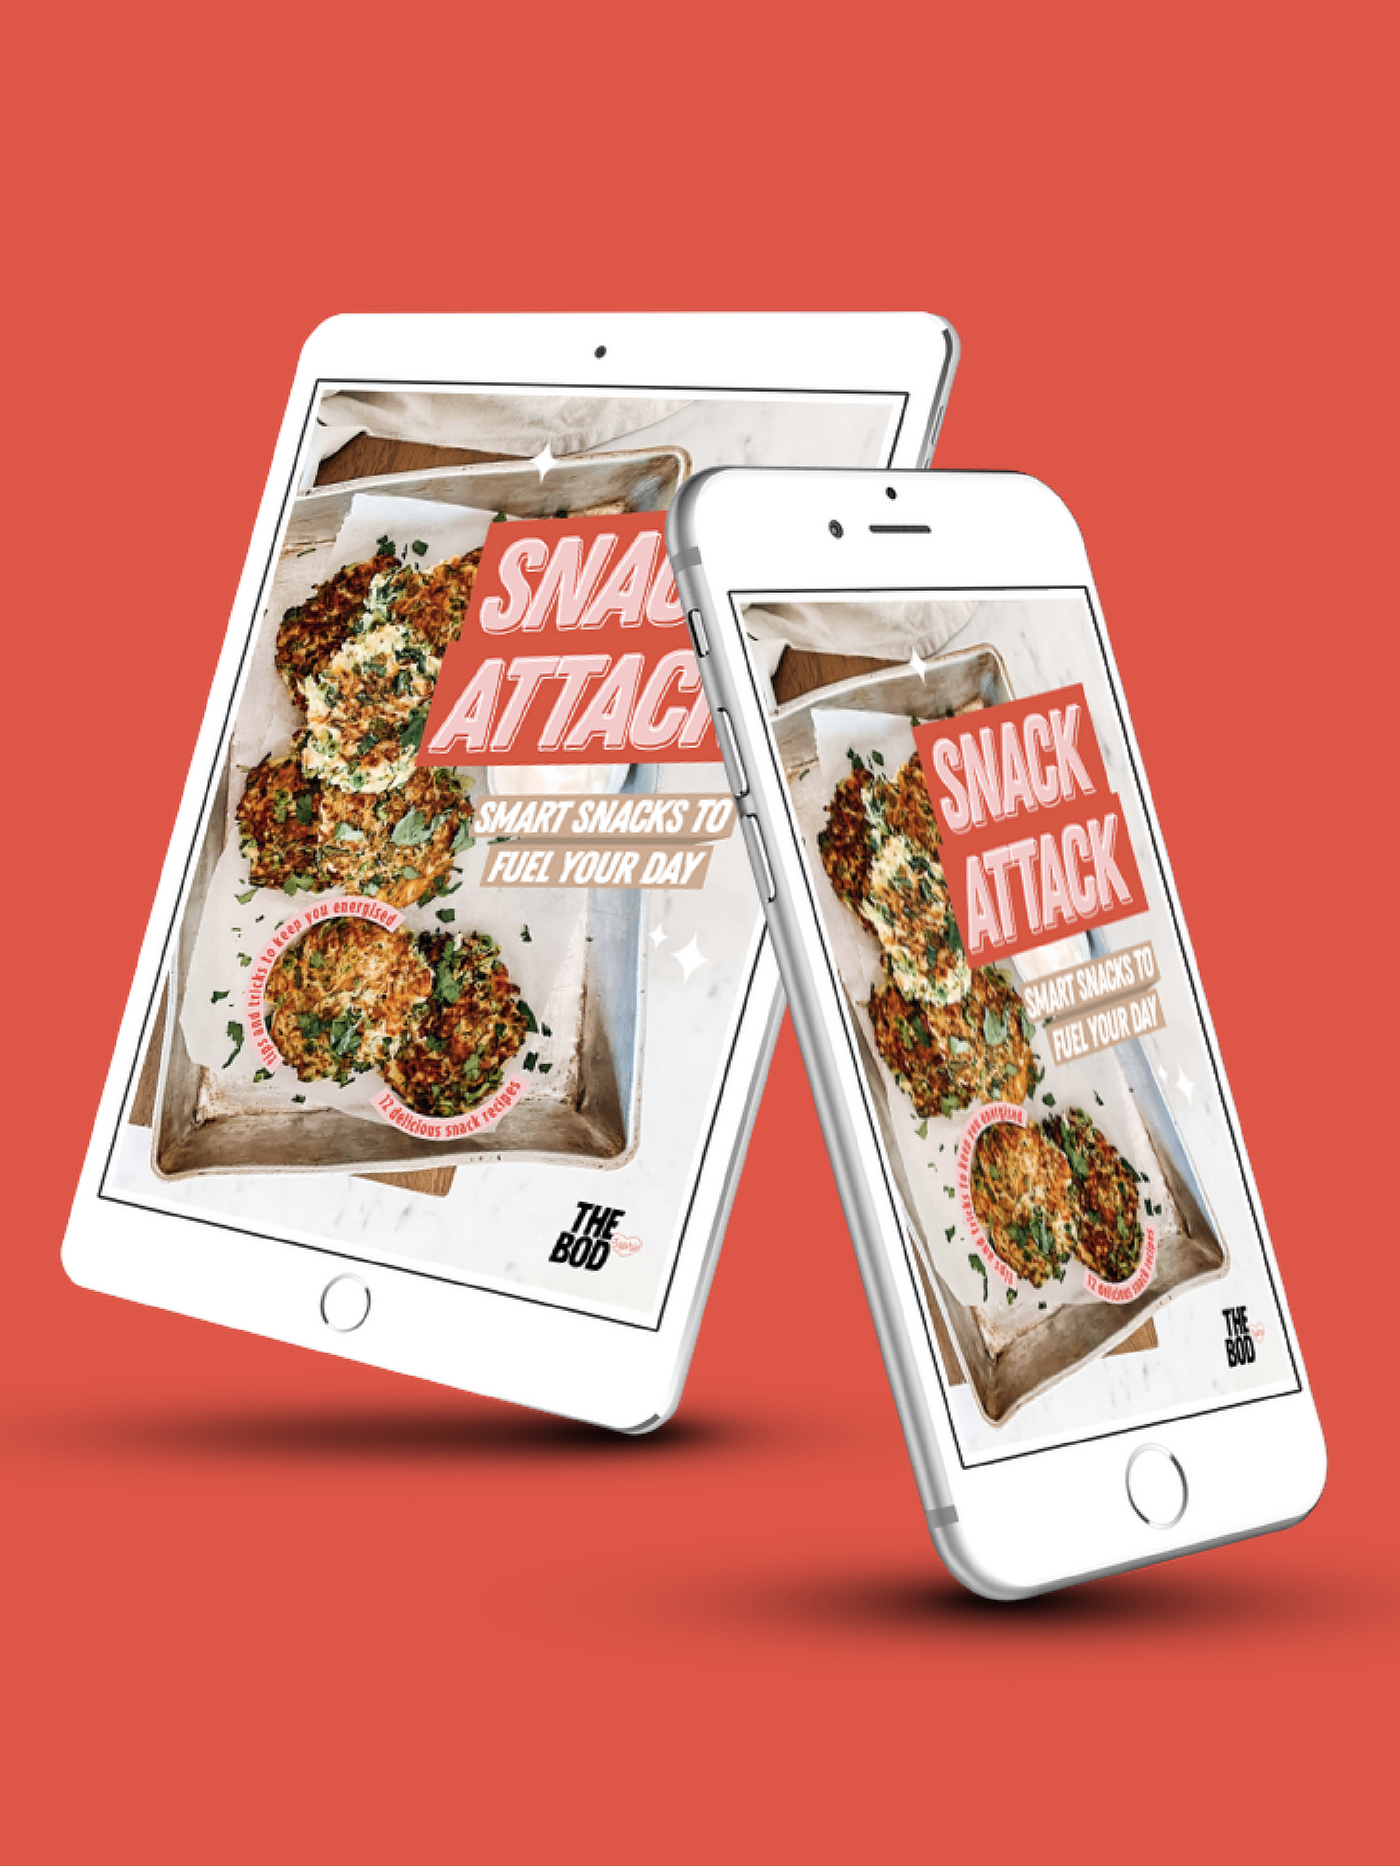 Snack Attack Recipe Book | Digital Edition | The Bod